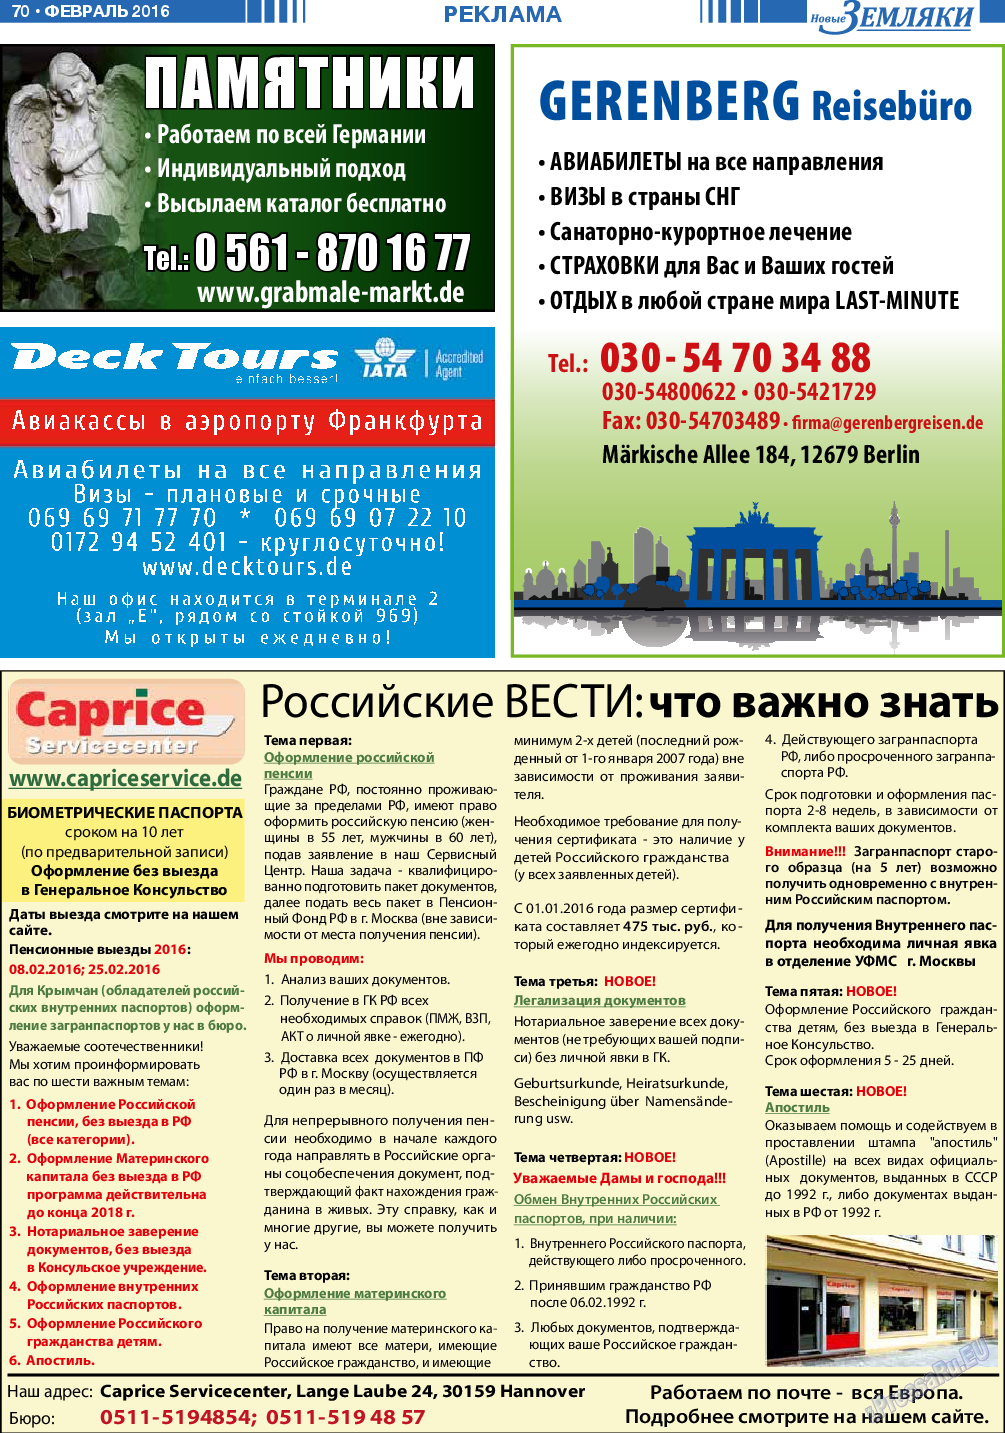 Новые Земляки (газета). 2016 год, номер 2, стр. 70